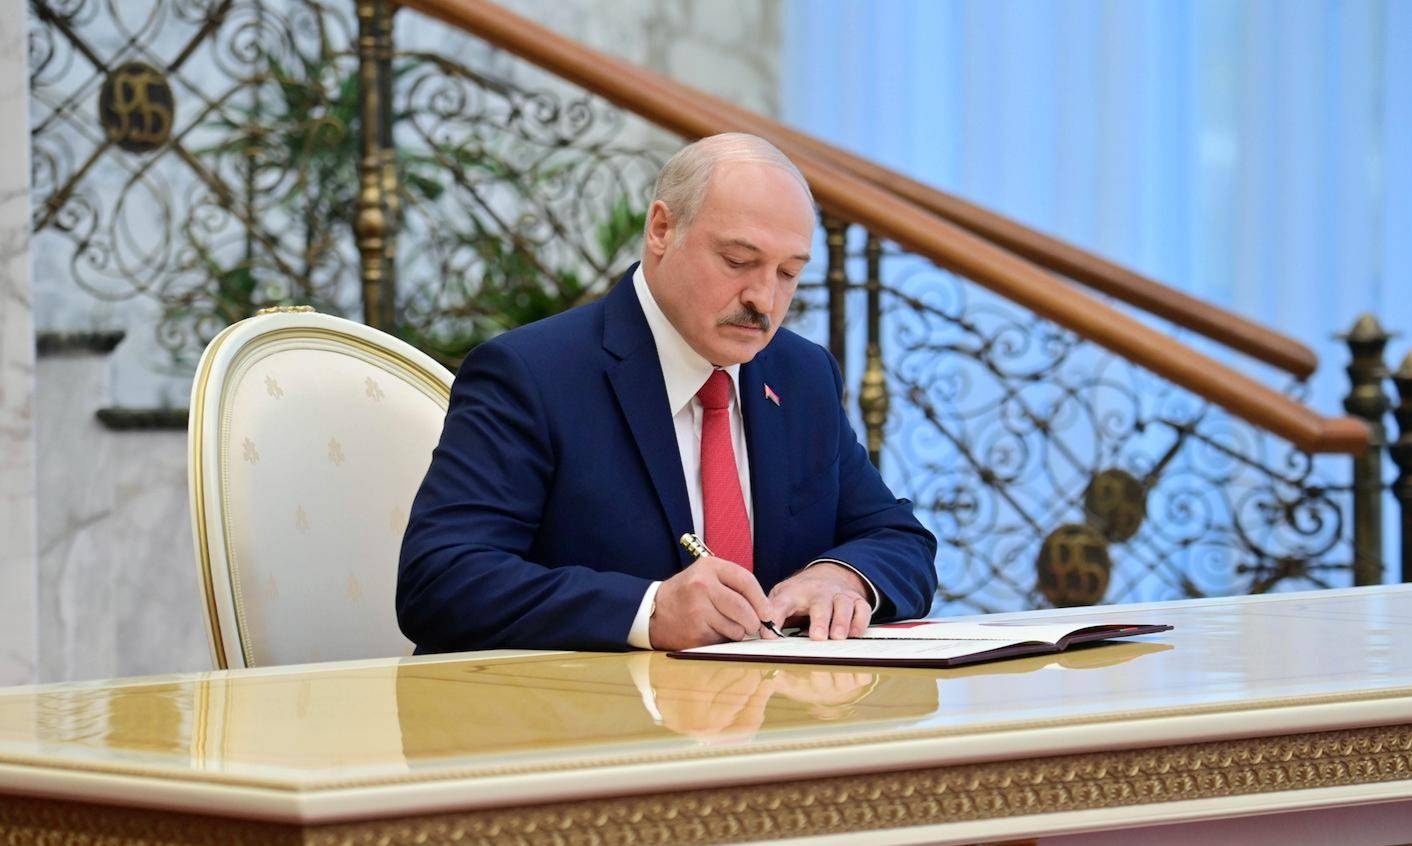 "Не надо нам возить заразу". Лукашенко распорядился не пускать в страну уехавших во время пандемии